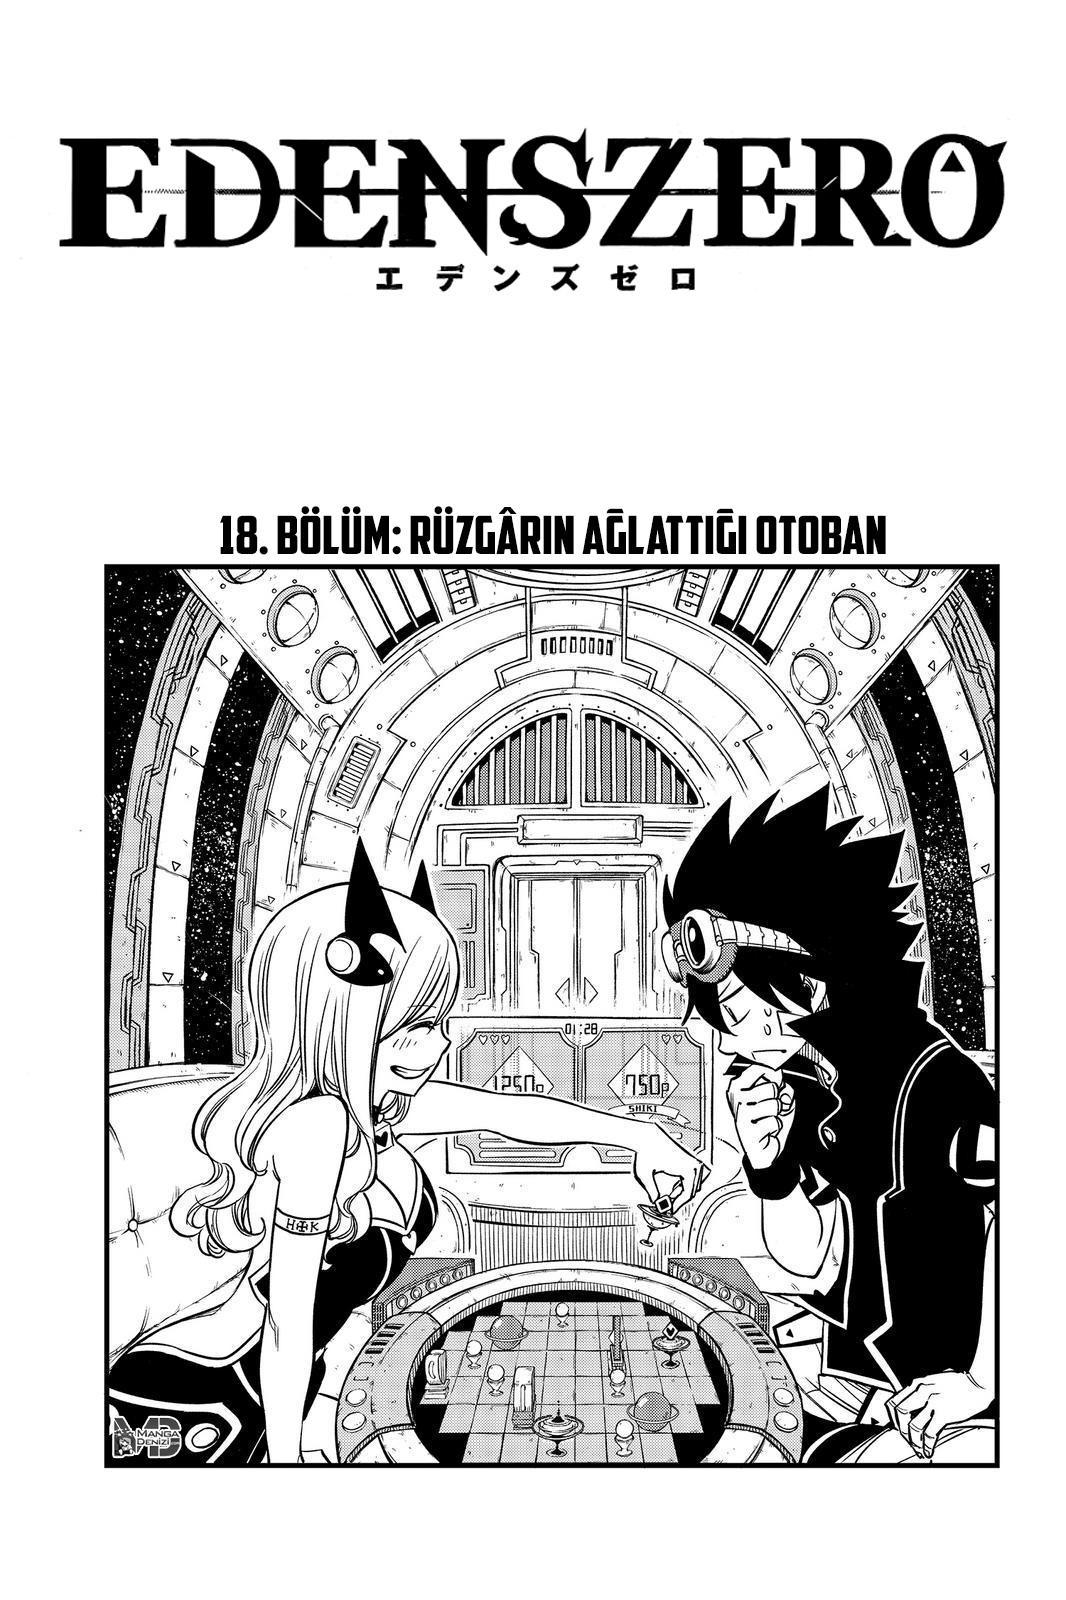 Eden's Zero mangasının 018 bölümünün 2. sayfasını okuyorsunuz.